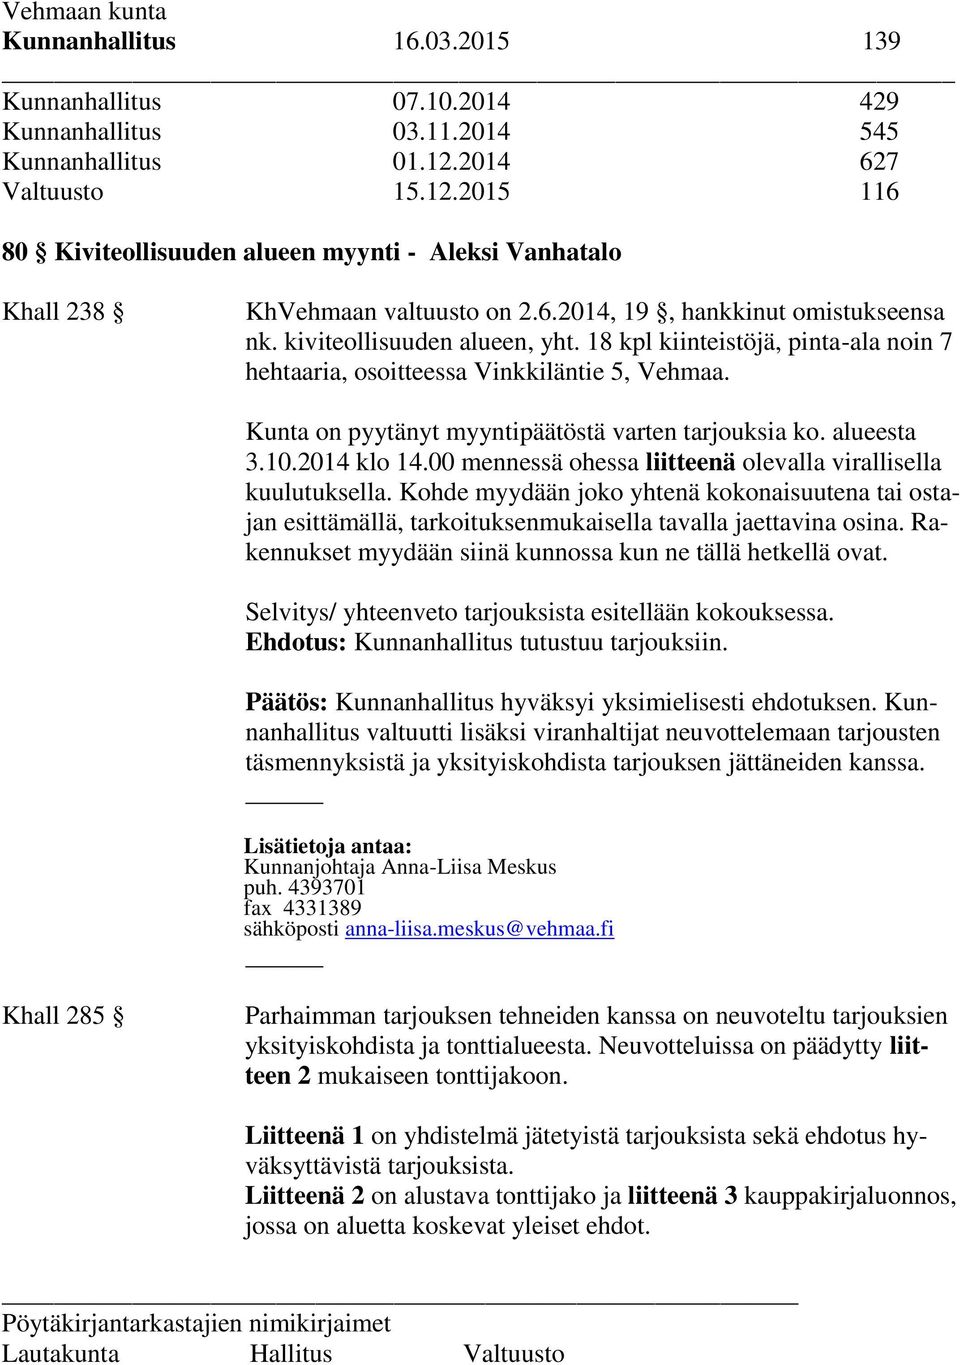 18 kpl kiinteistöjä, pinta-ala noin 7 hehtaaria, osoitteessa Vinkkiläntie 5, Vehmaa. Kunta on pyytänyt myyntipäätöstä varten tarjouksia ko. alueesta 3.10.2014 klo 14.